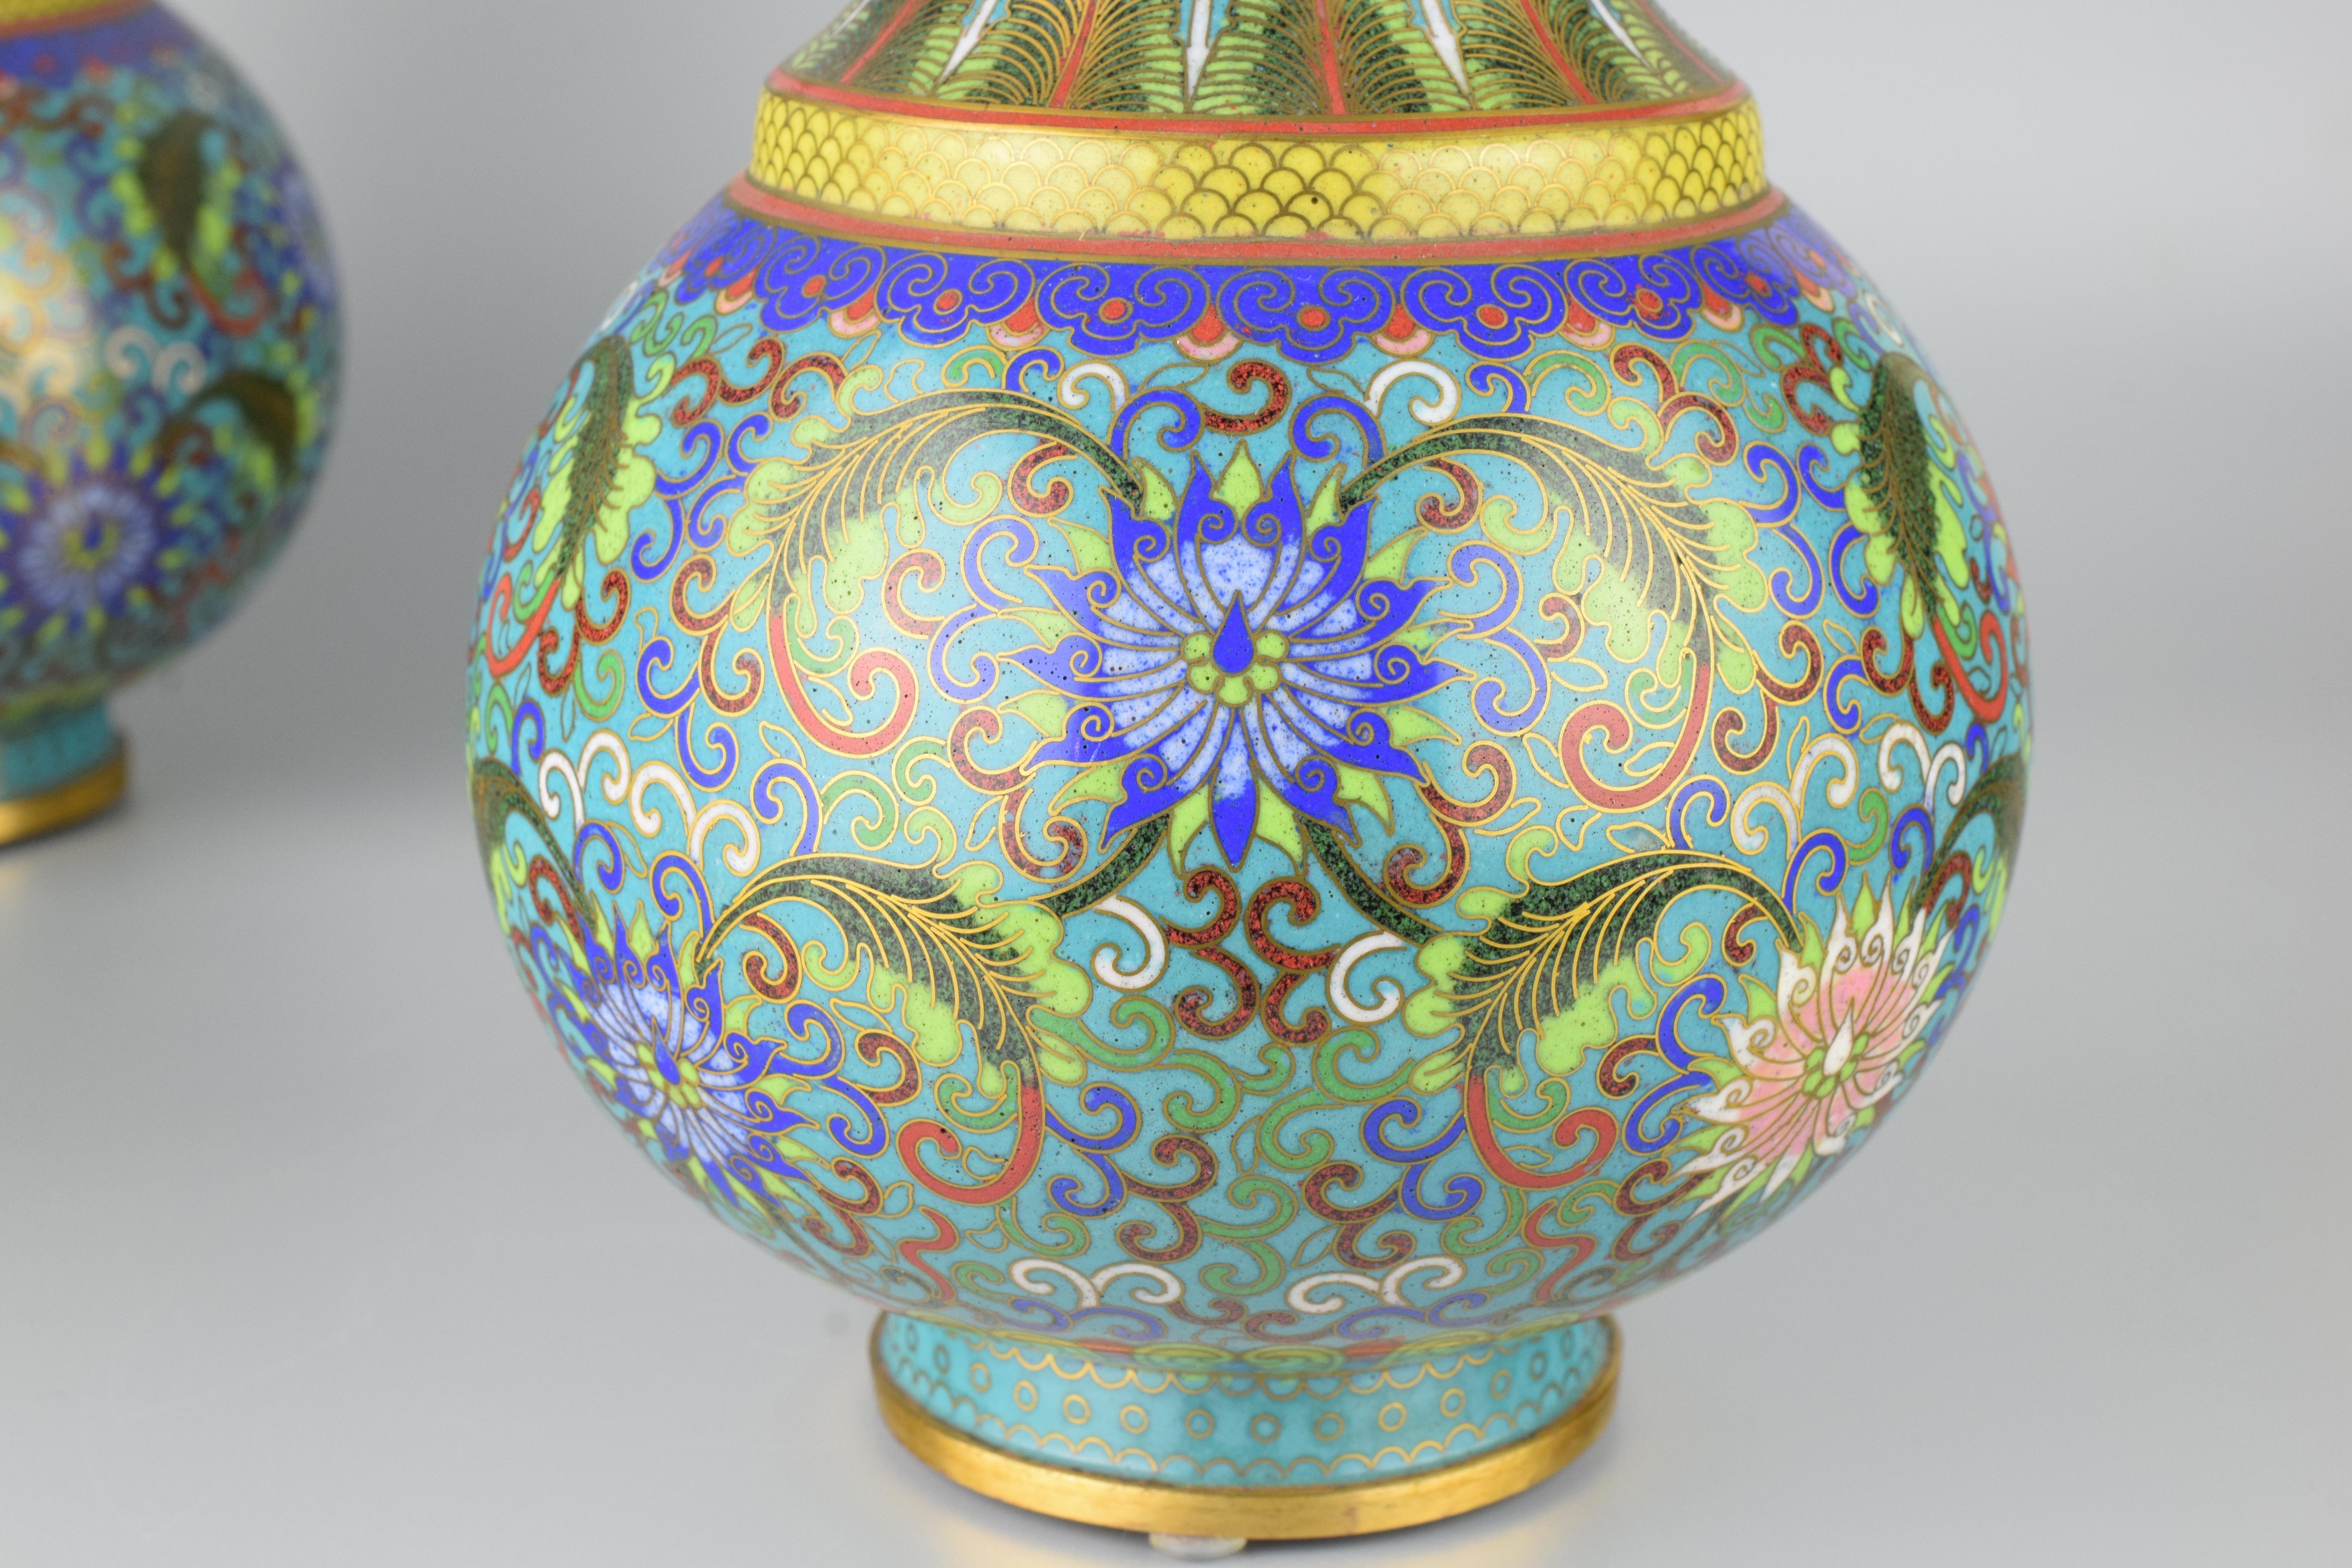 China, Anfang des 20. Jahrhunderts
Hervorragender Zustand für dieses Paar emaillierter und vergoldeter Cloisonné-Vasen mit floralen Motiven.
Auf der Unterseite jedes Papiers befindet sich ein Label mit der Inventarnummer in Tinte.
Maße: Höhe 22,5